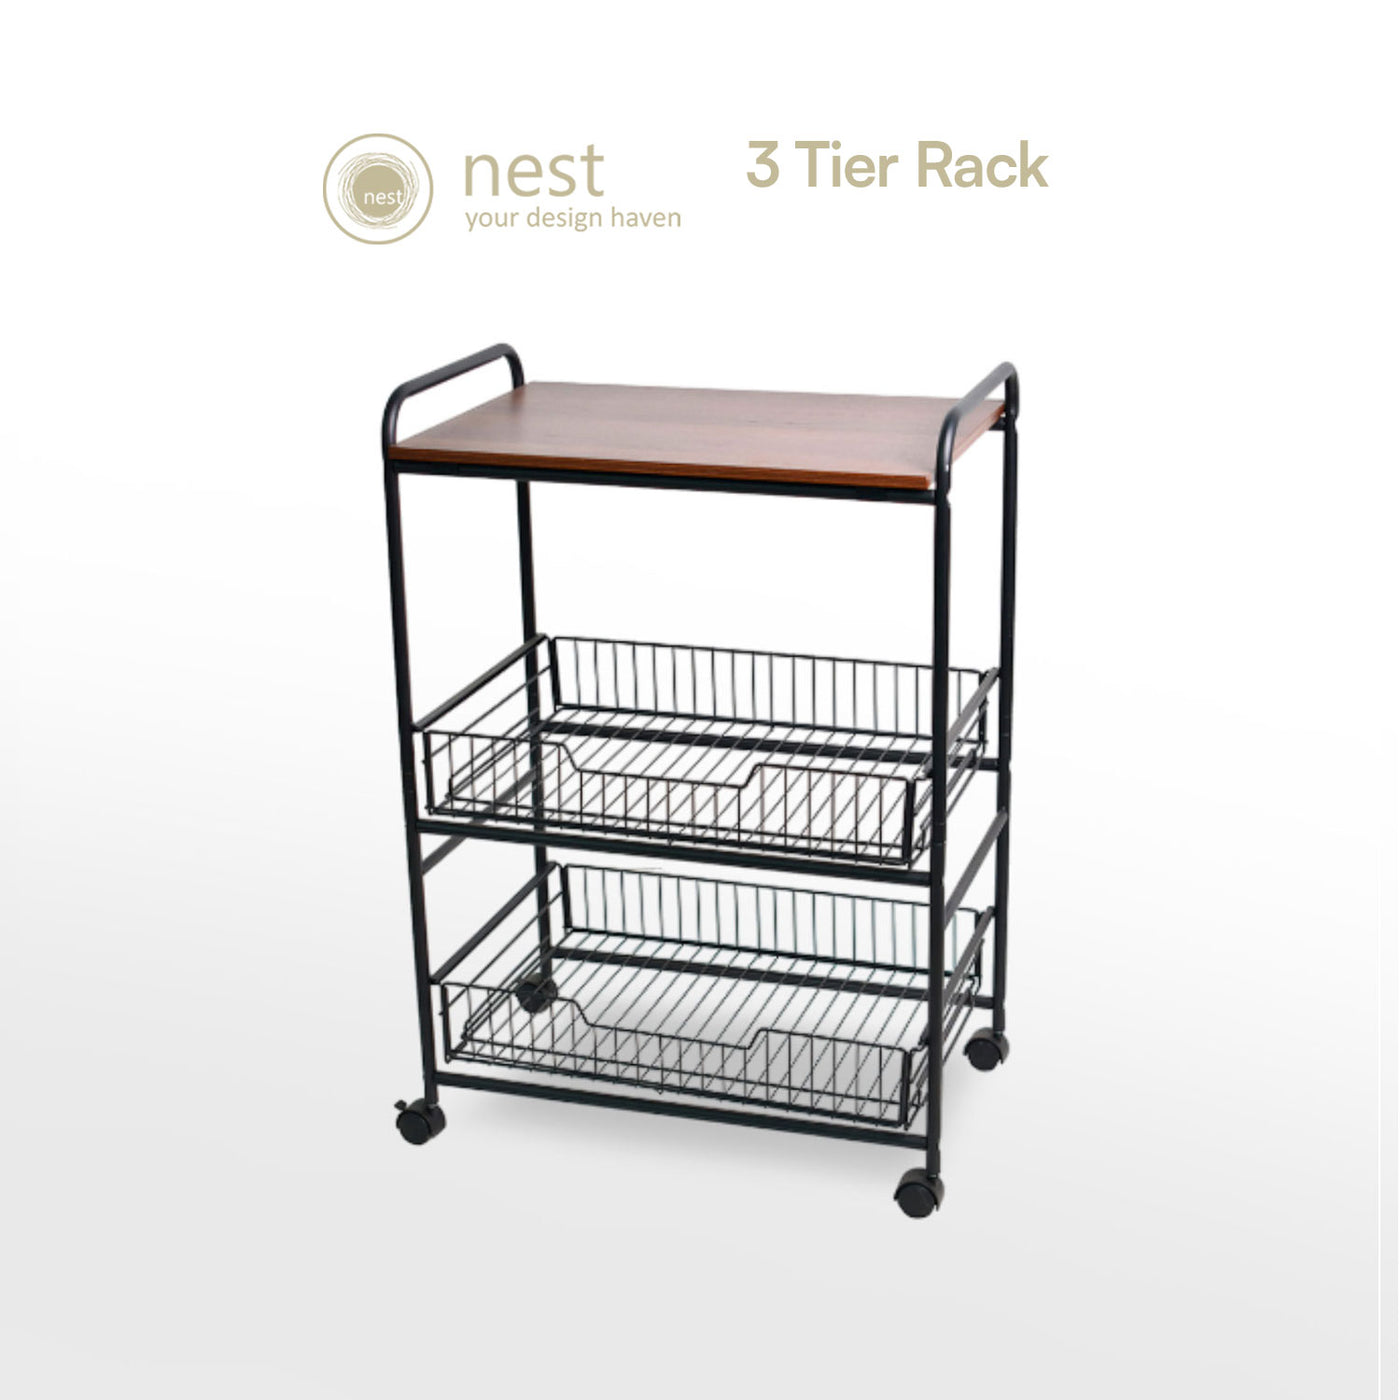 NEST DESIGN LAB Premium Kitchen Basket Rack 3 tier with Wheels